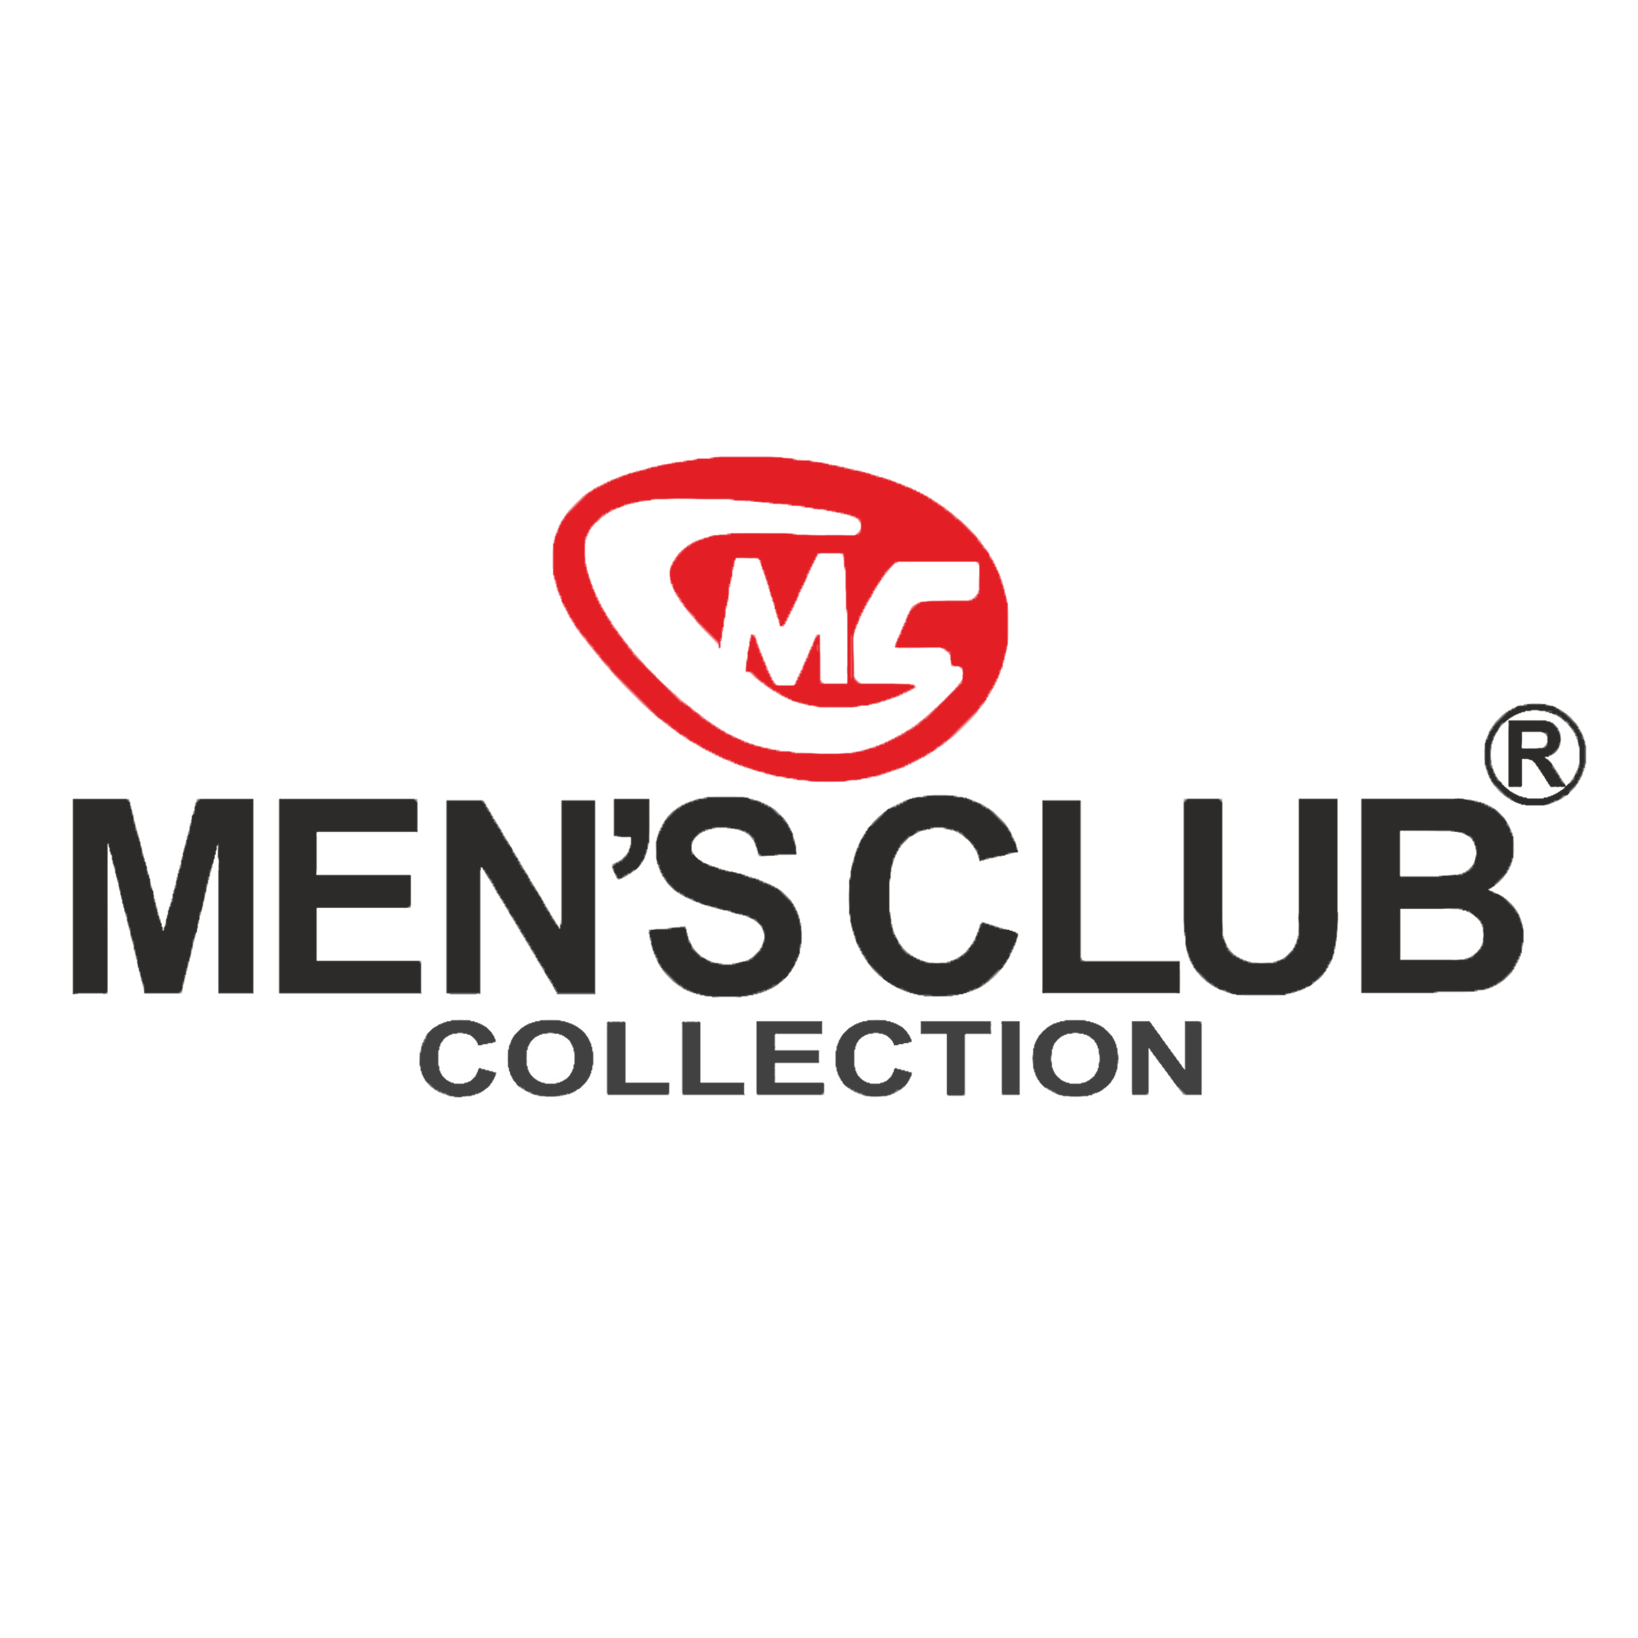 MEN’S CLUB